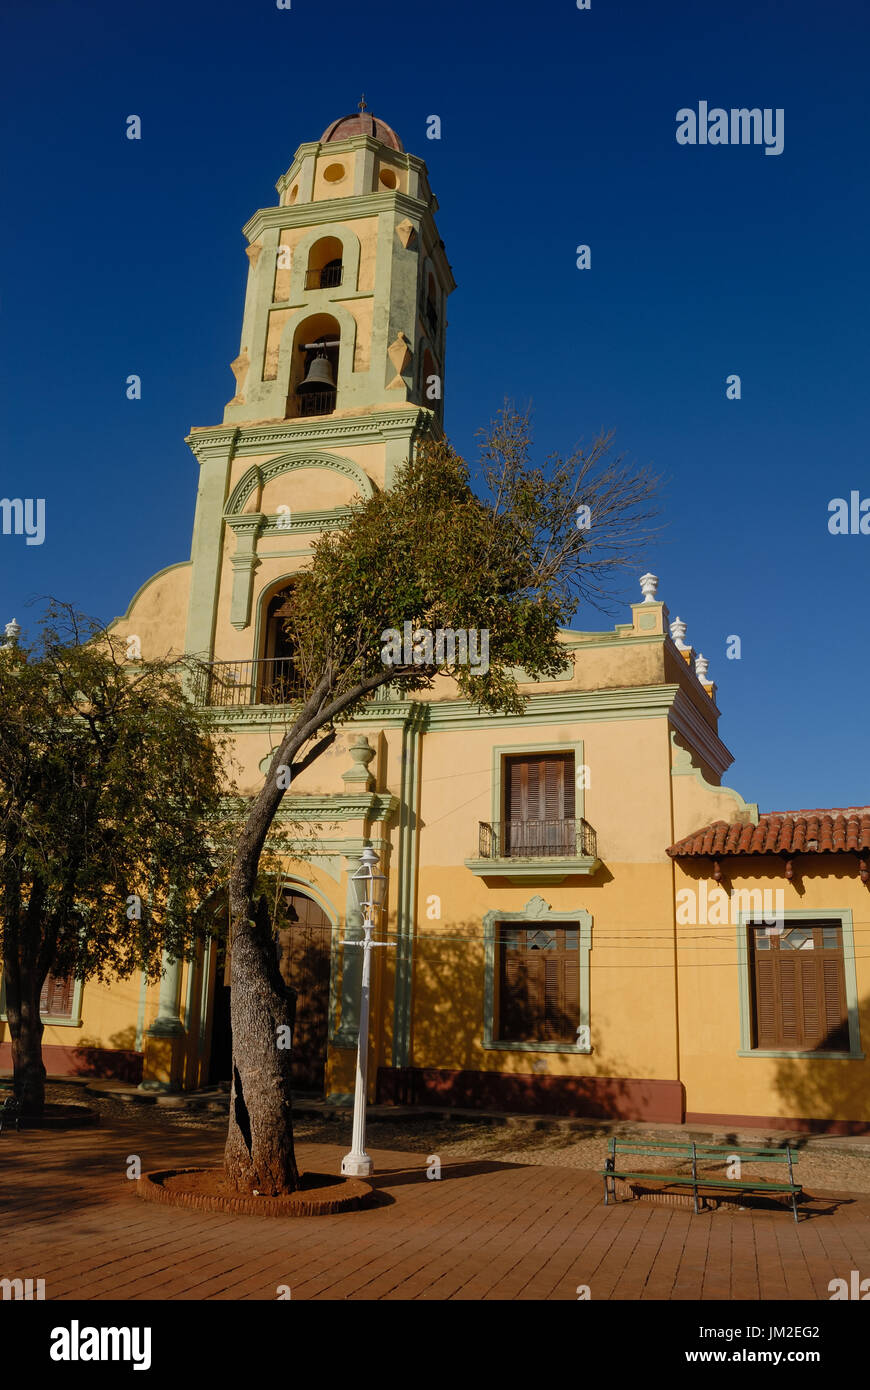 Torre della chiesa per il quadrato in Trinidad, Cuba con un banco e albero davanti alla chiesa. Foto Stock